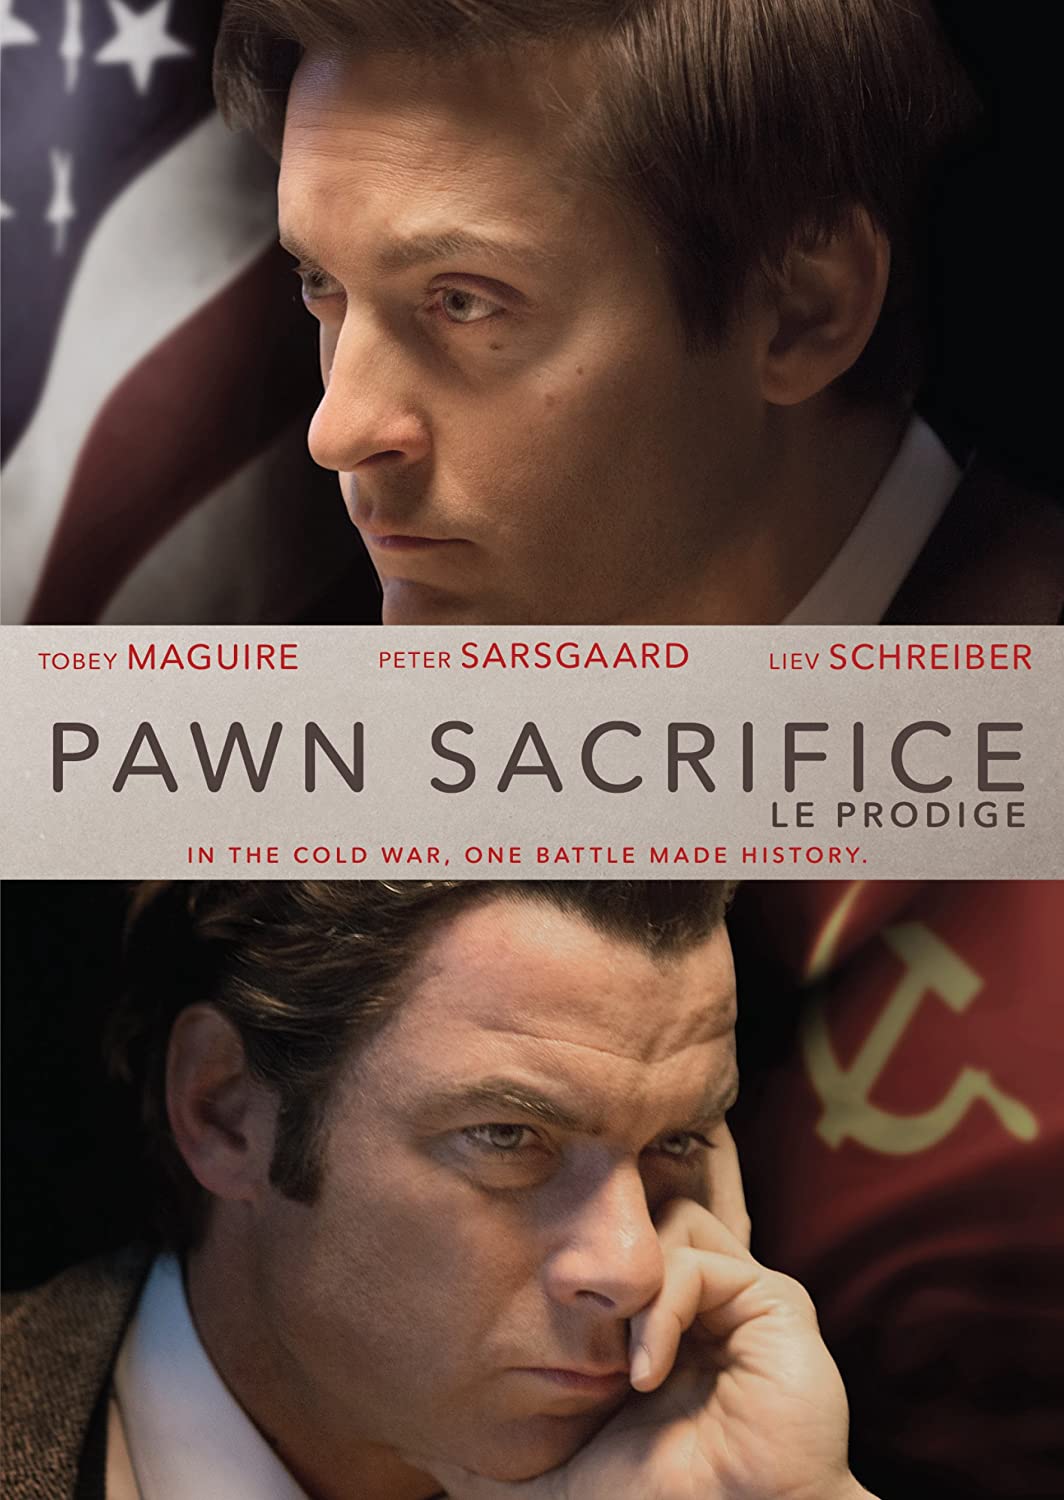 Image Pawn sacrifice - Le prodige